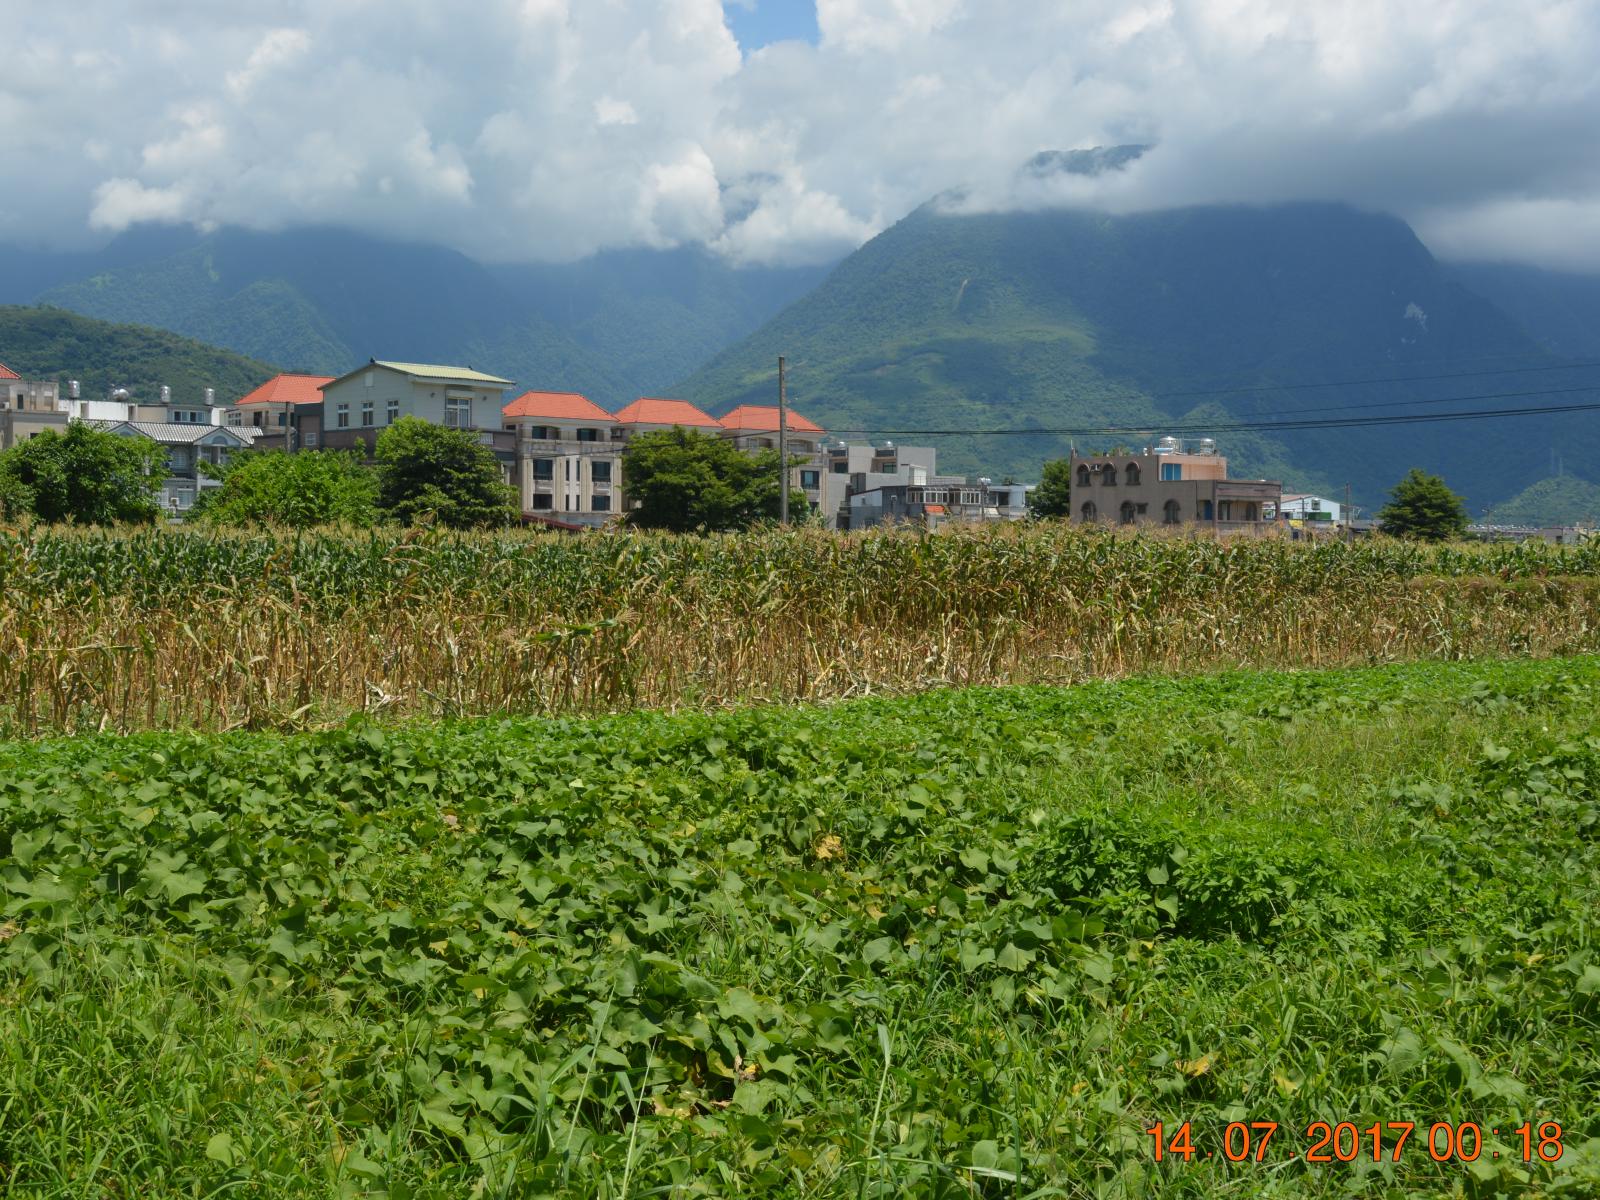 明淳農場為減少環境汙染，實行無毒無化肥的有機種植